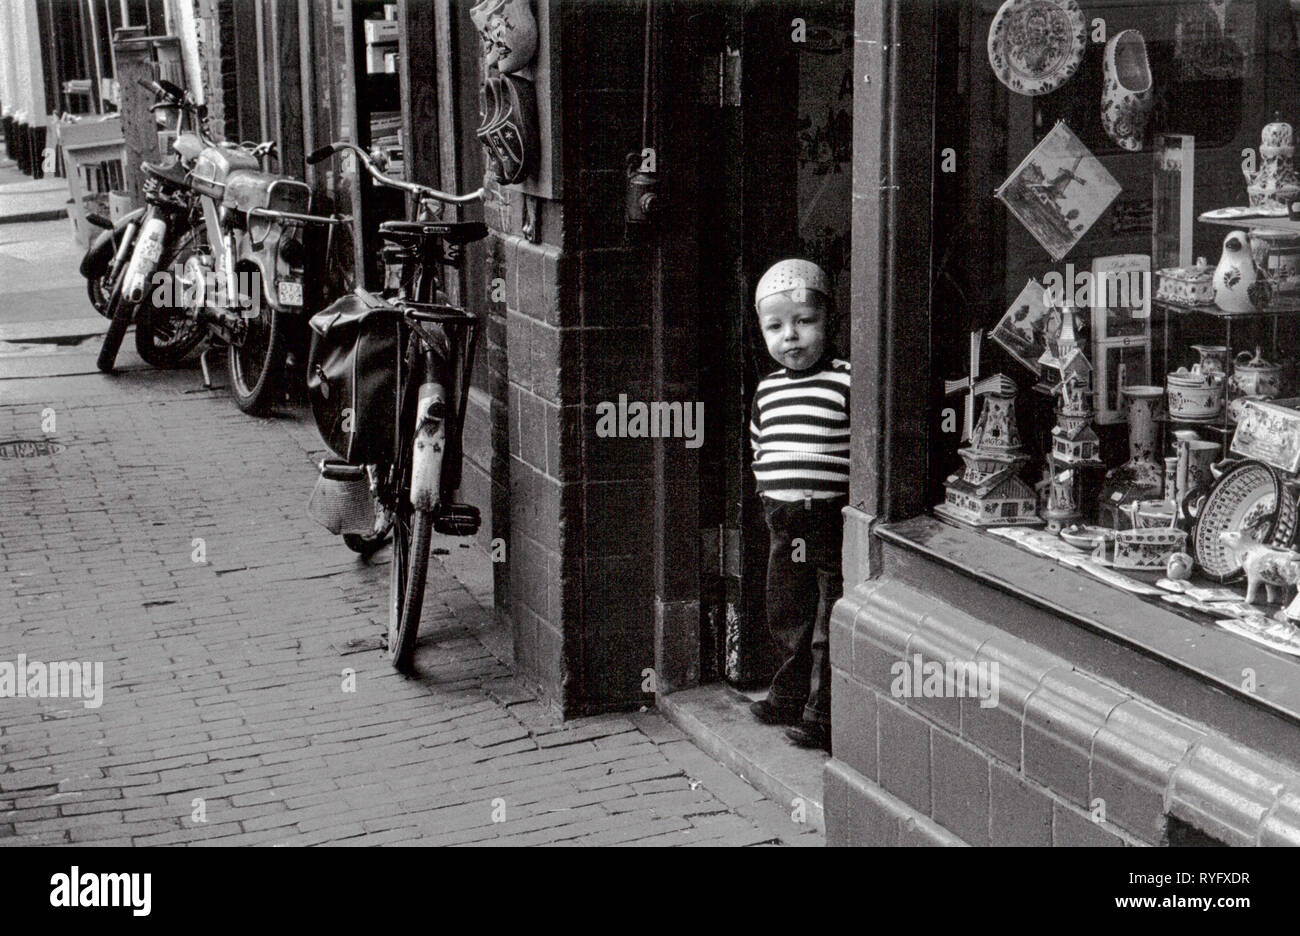 Boy in a shop door, Amsterdam, Netherlands Stock Photo